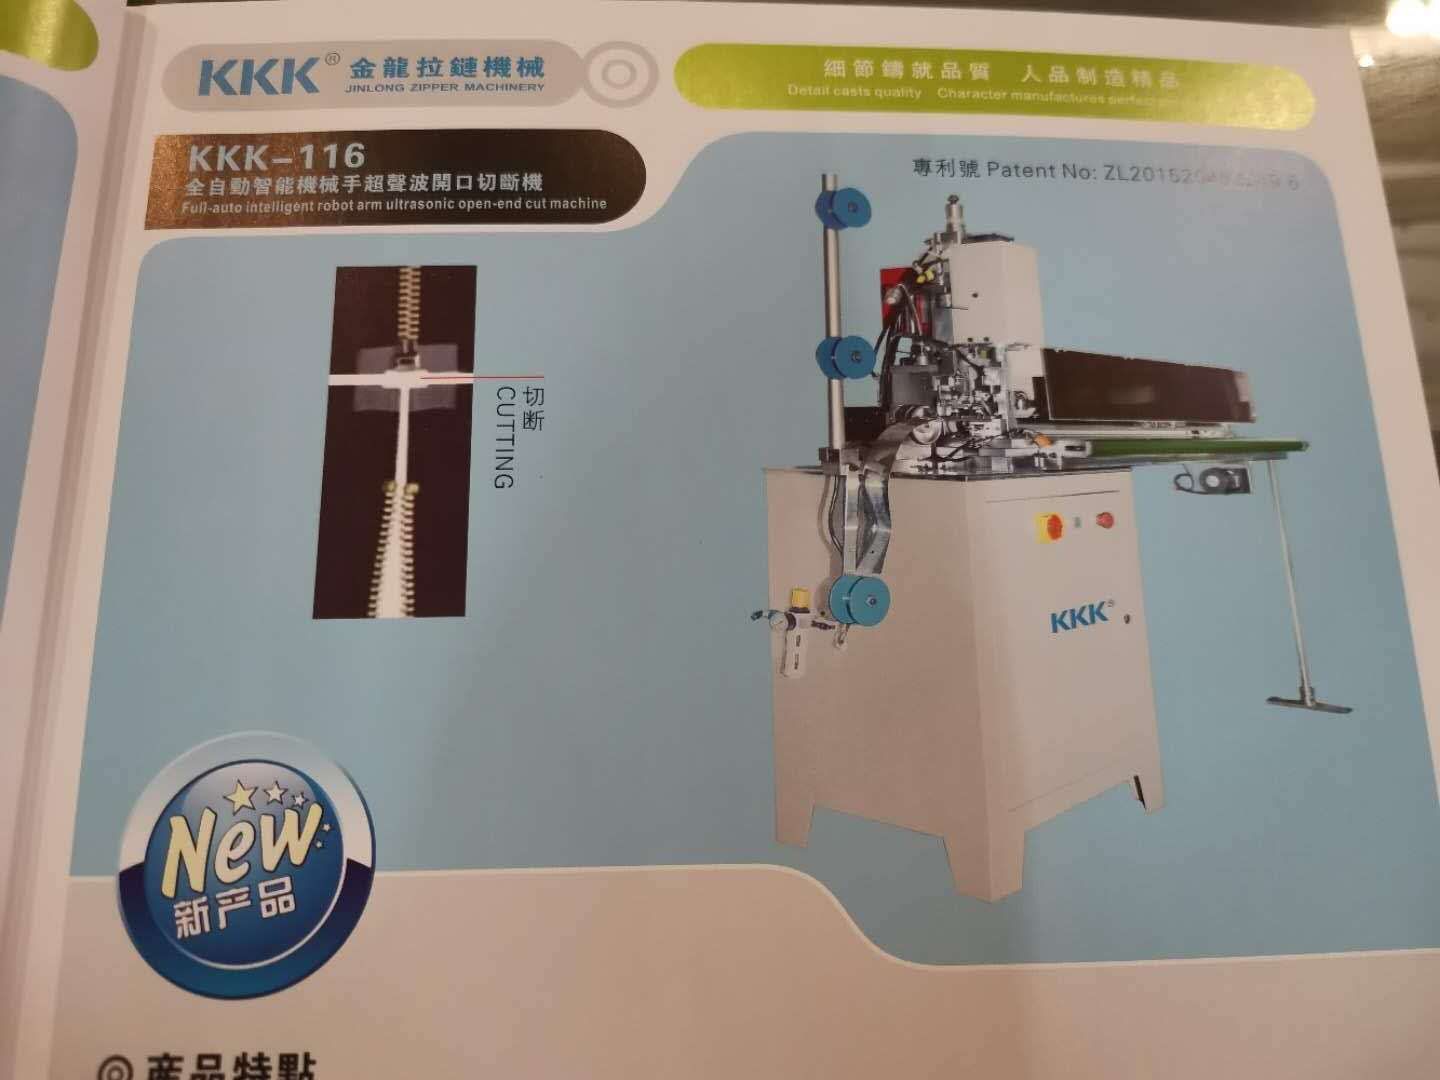 KKK—116
全自动智能机械手超声波闭口切断机图